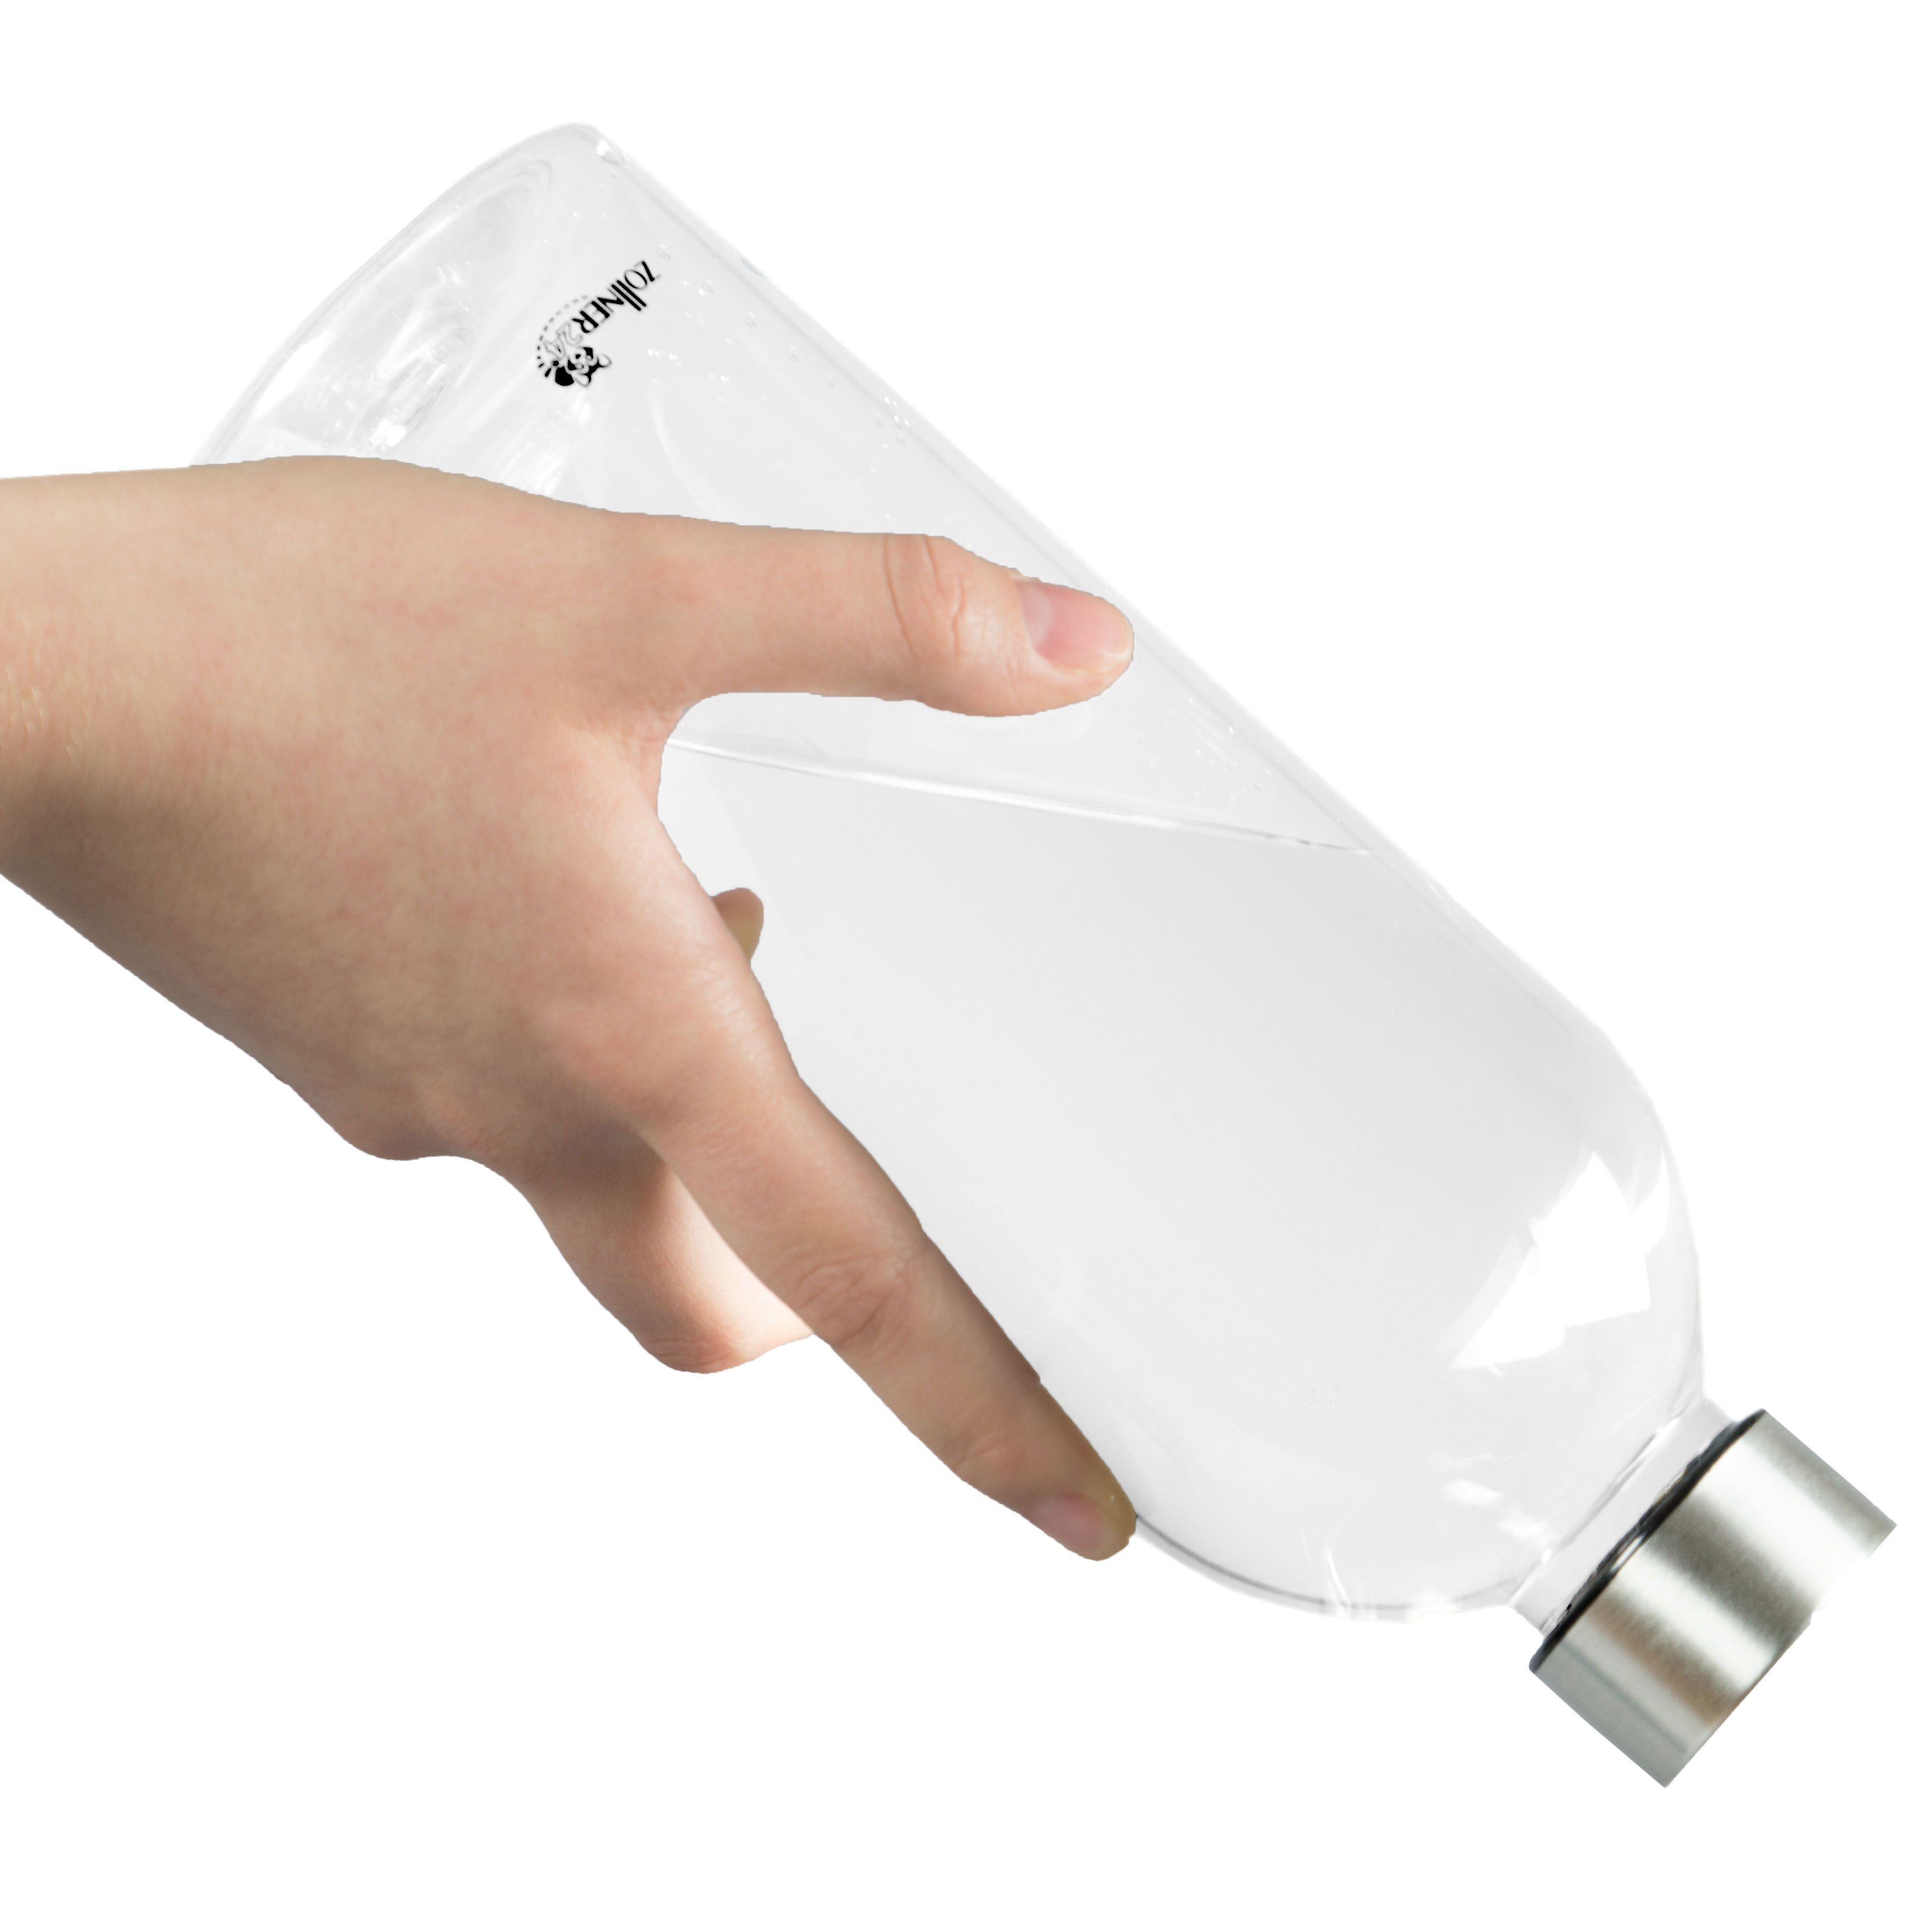 ZOLLNER24 Trinkflasche, BPA-frei, BPA-frei, mit transparent Schraubverschluss